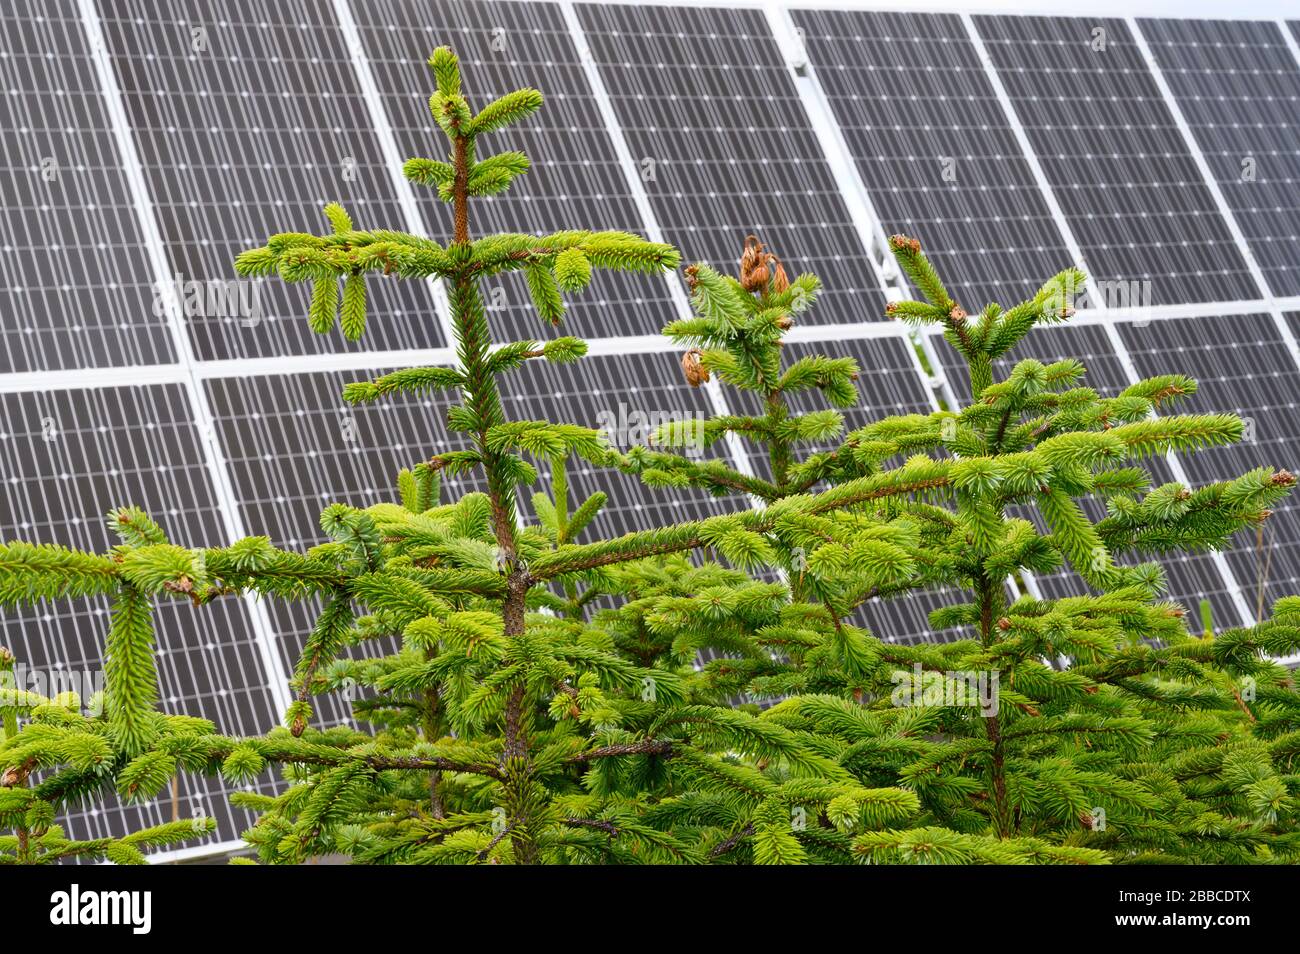 Panneaux solaires pour la maison hors réseau, North Beach, Haida Gwaii, anciennement connue sous le nom d'îles de la Reine-Charlotte, Colombie-Britannique, Canada Banque D'Images